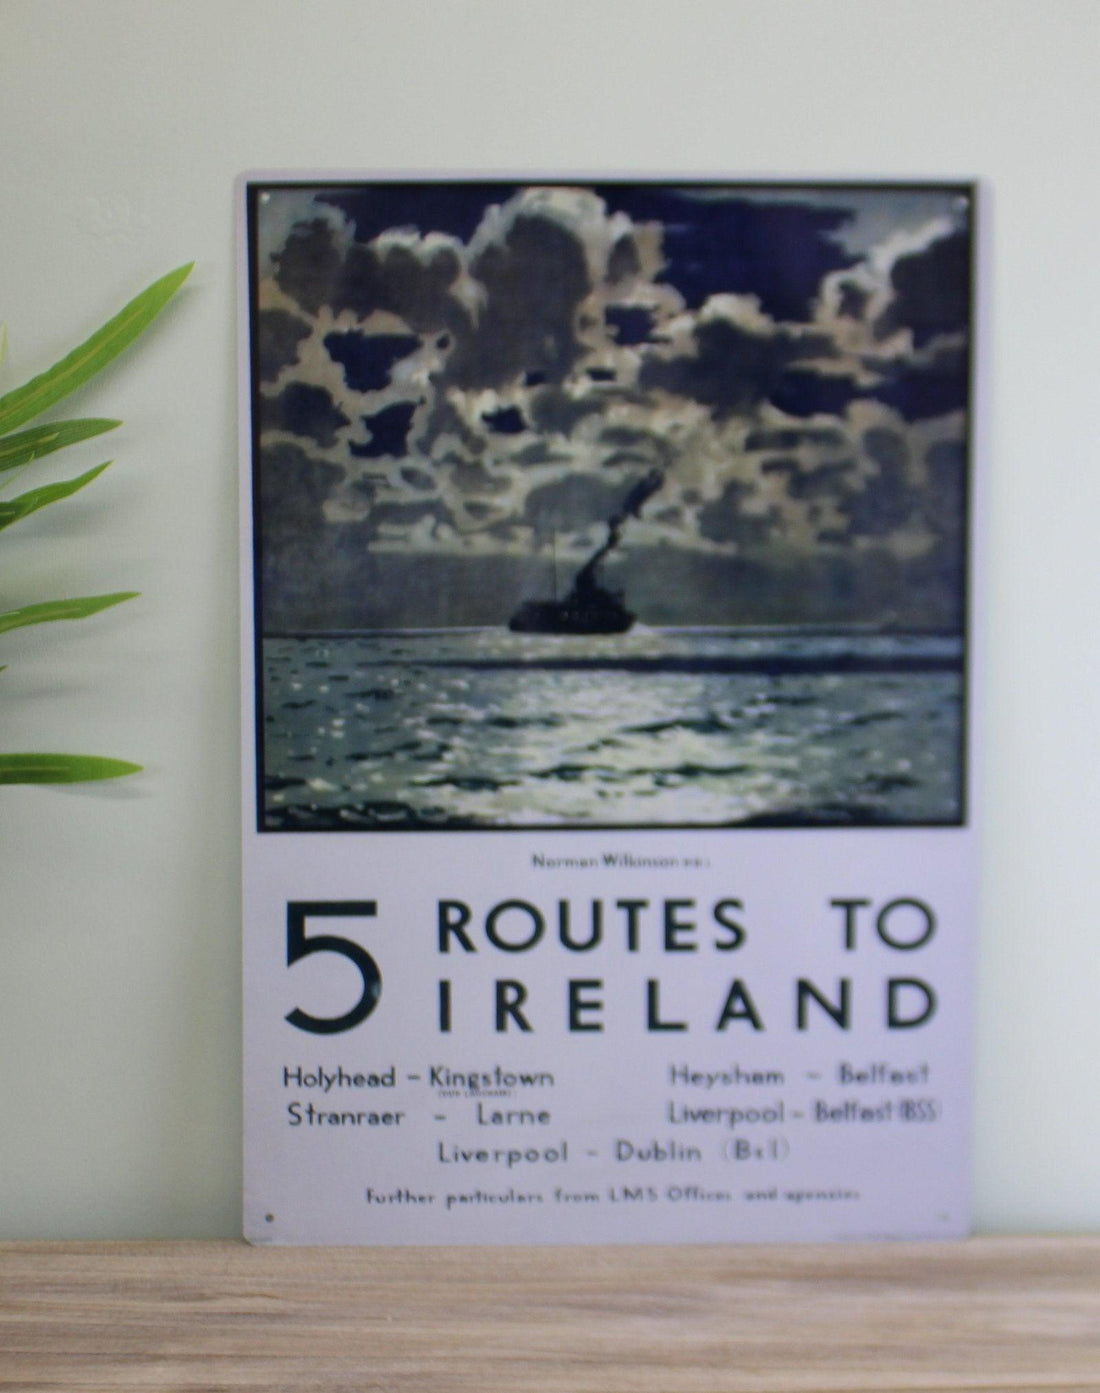 Vintage Metal Sign - Retro Art - 5 Routes To Ireland Ferry Poster - £27.99 - Retro Advertising 